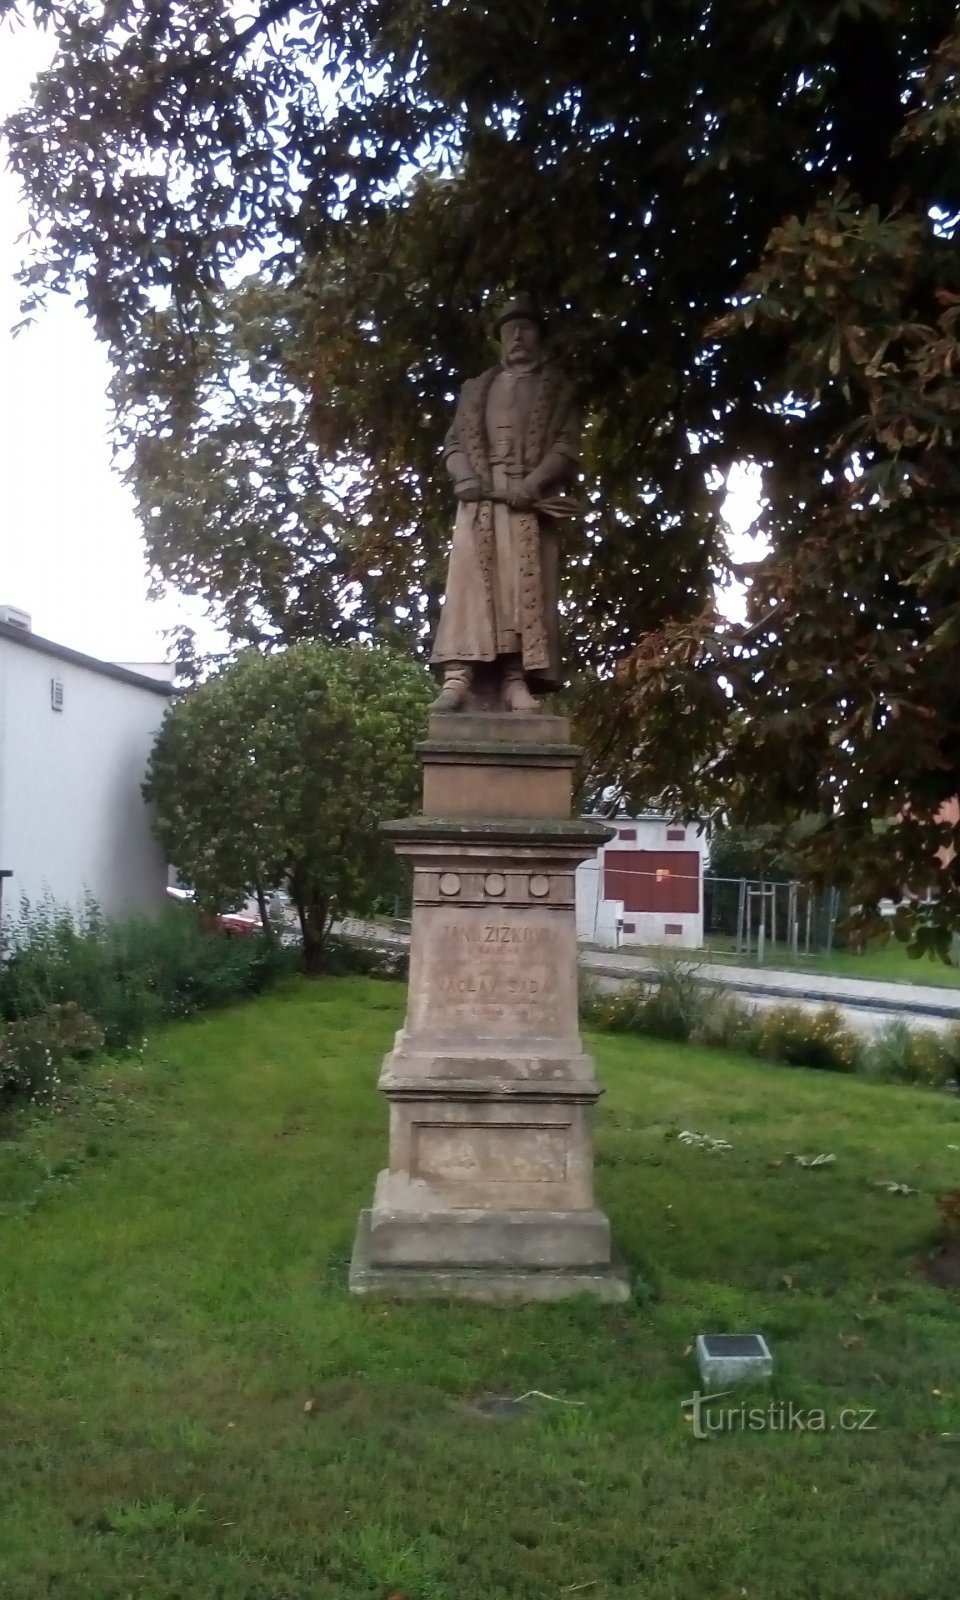 Đài tưởng niệm Jan Žižek ở Svítkov